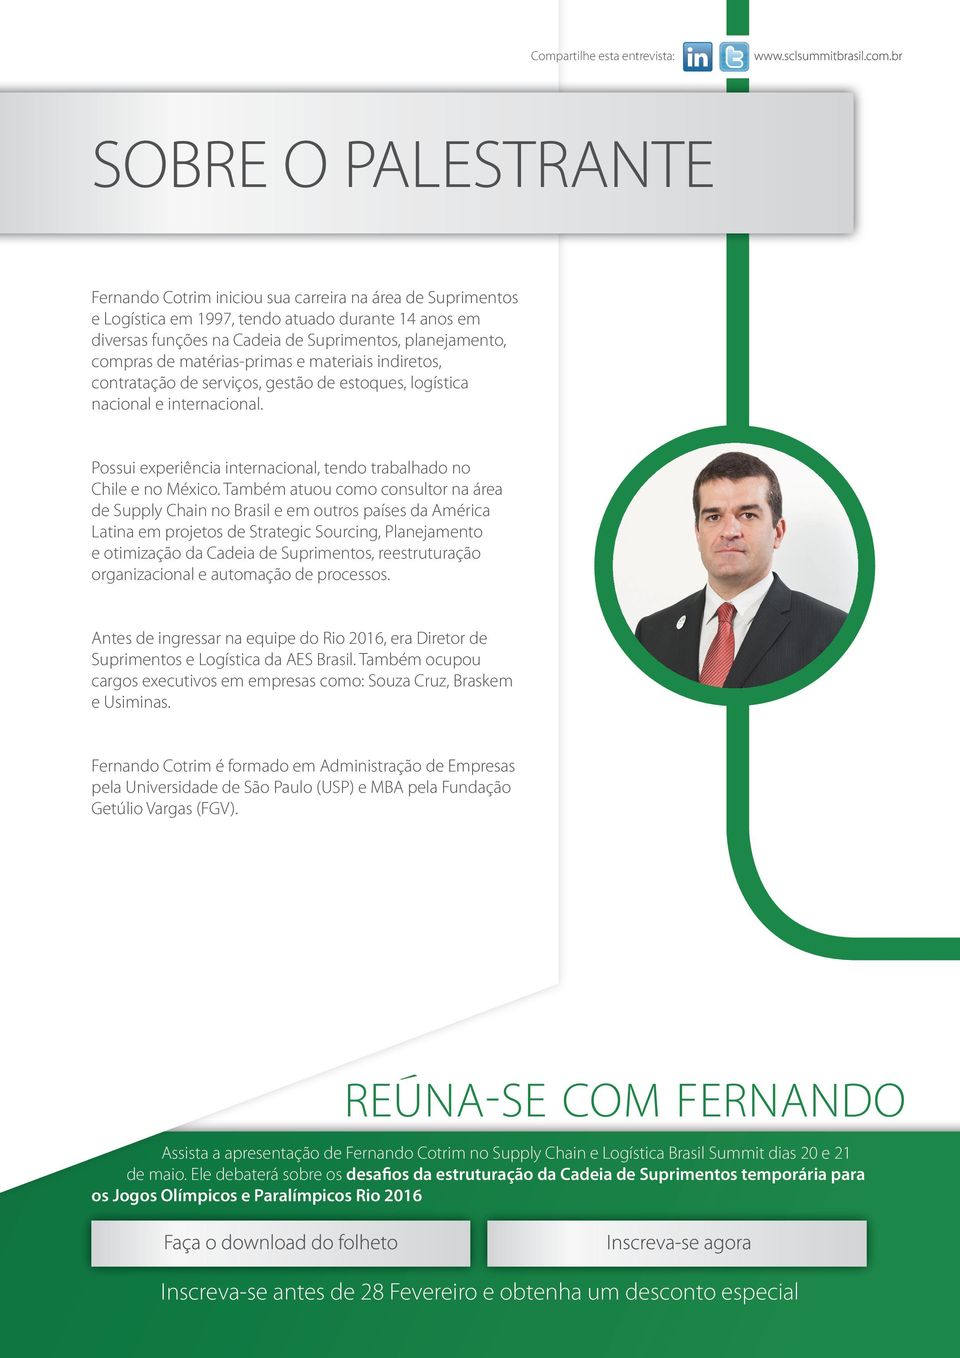 Também atuou como consultor na área de Supply Chain no Brasil e em outros países da América Latina em projetos de Strategic Sourcing, Planejamento e otimização da Cadeia de Suprimentos,